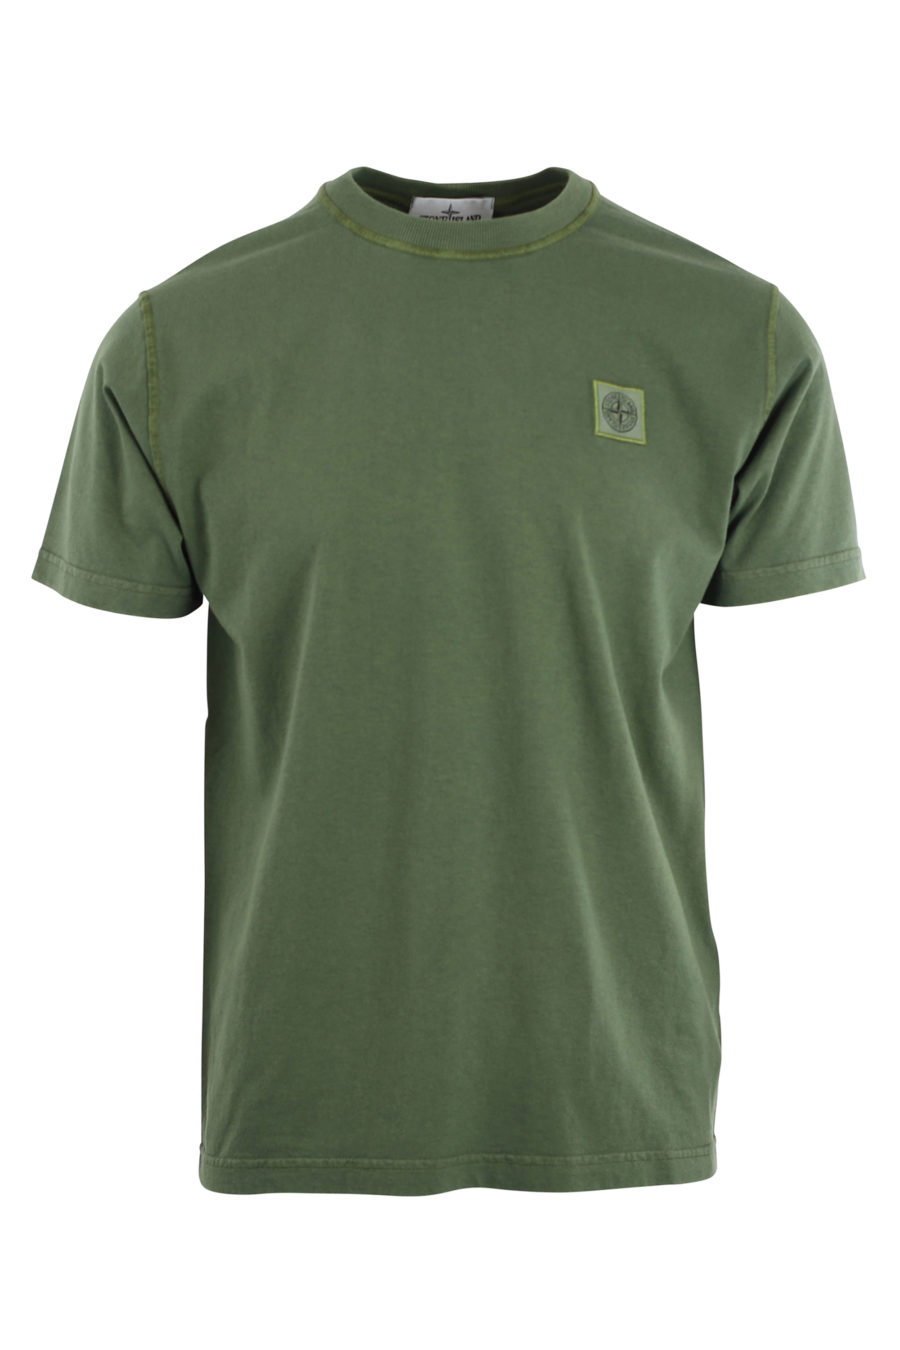 Camiseta verde militar con logo parche - IMG 9691